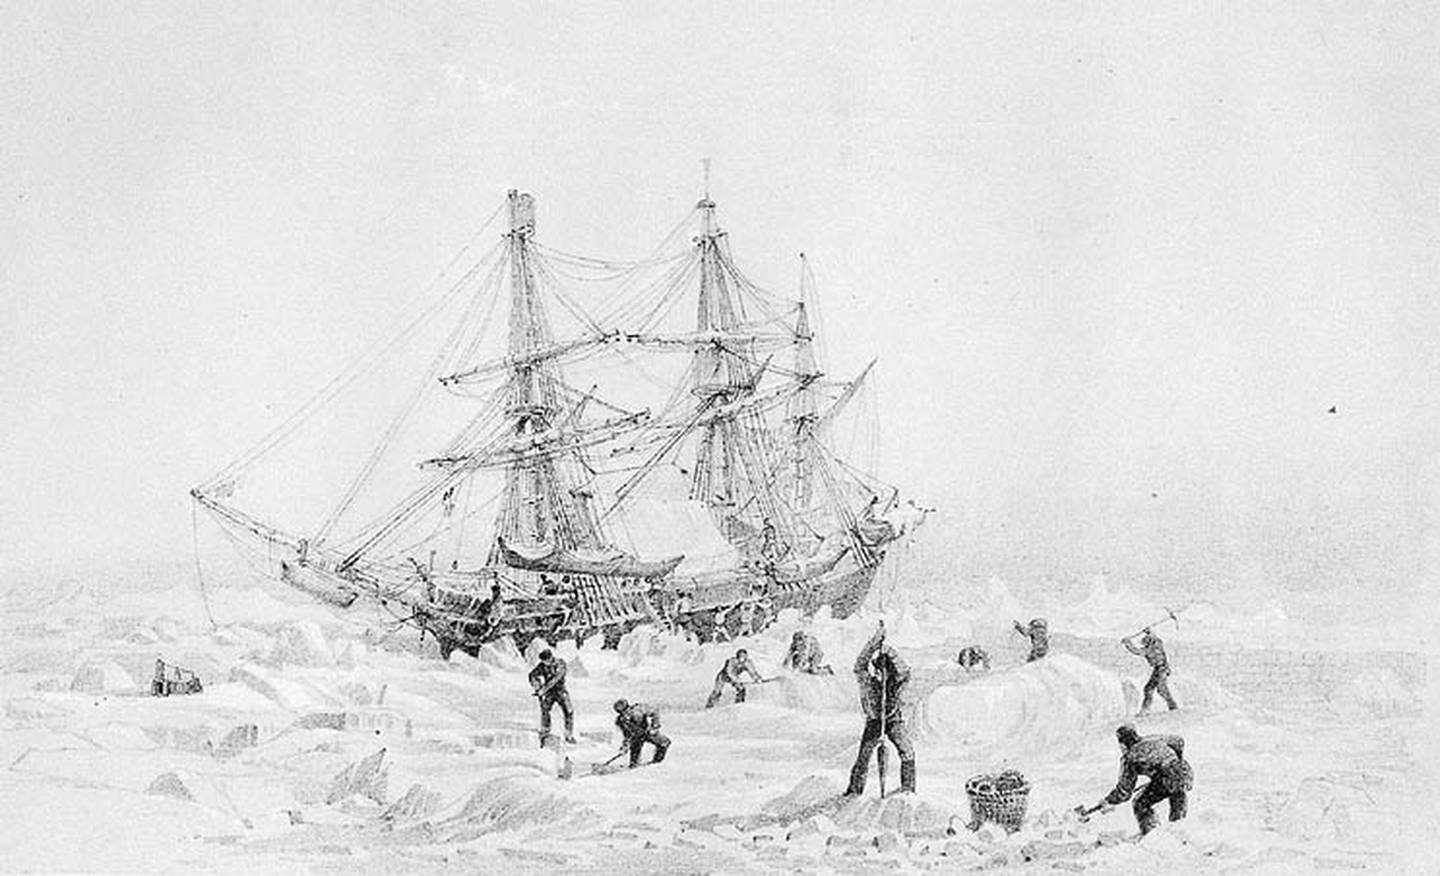 Franklin Expedition HMS Terror illustration